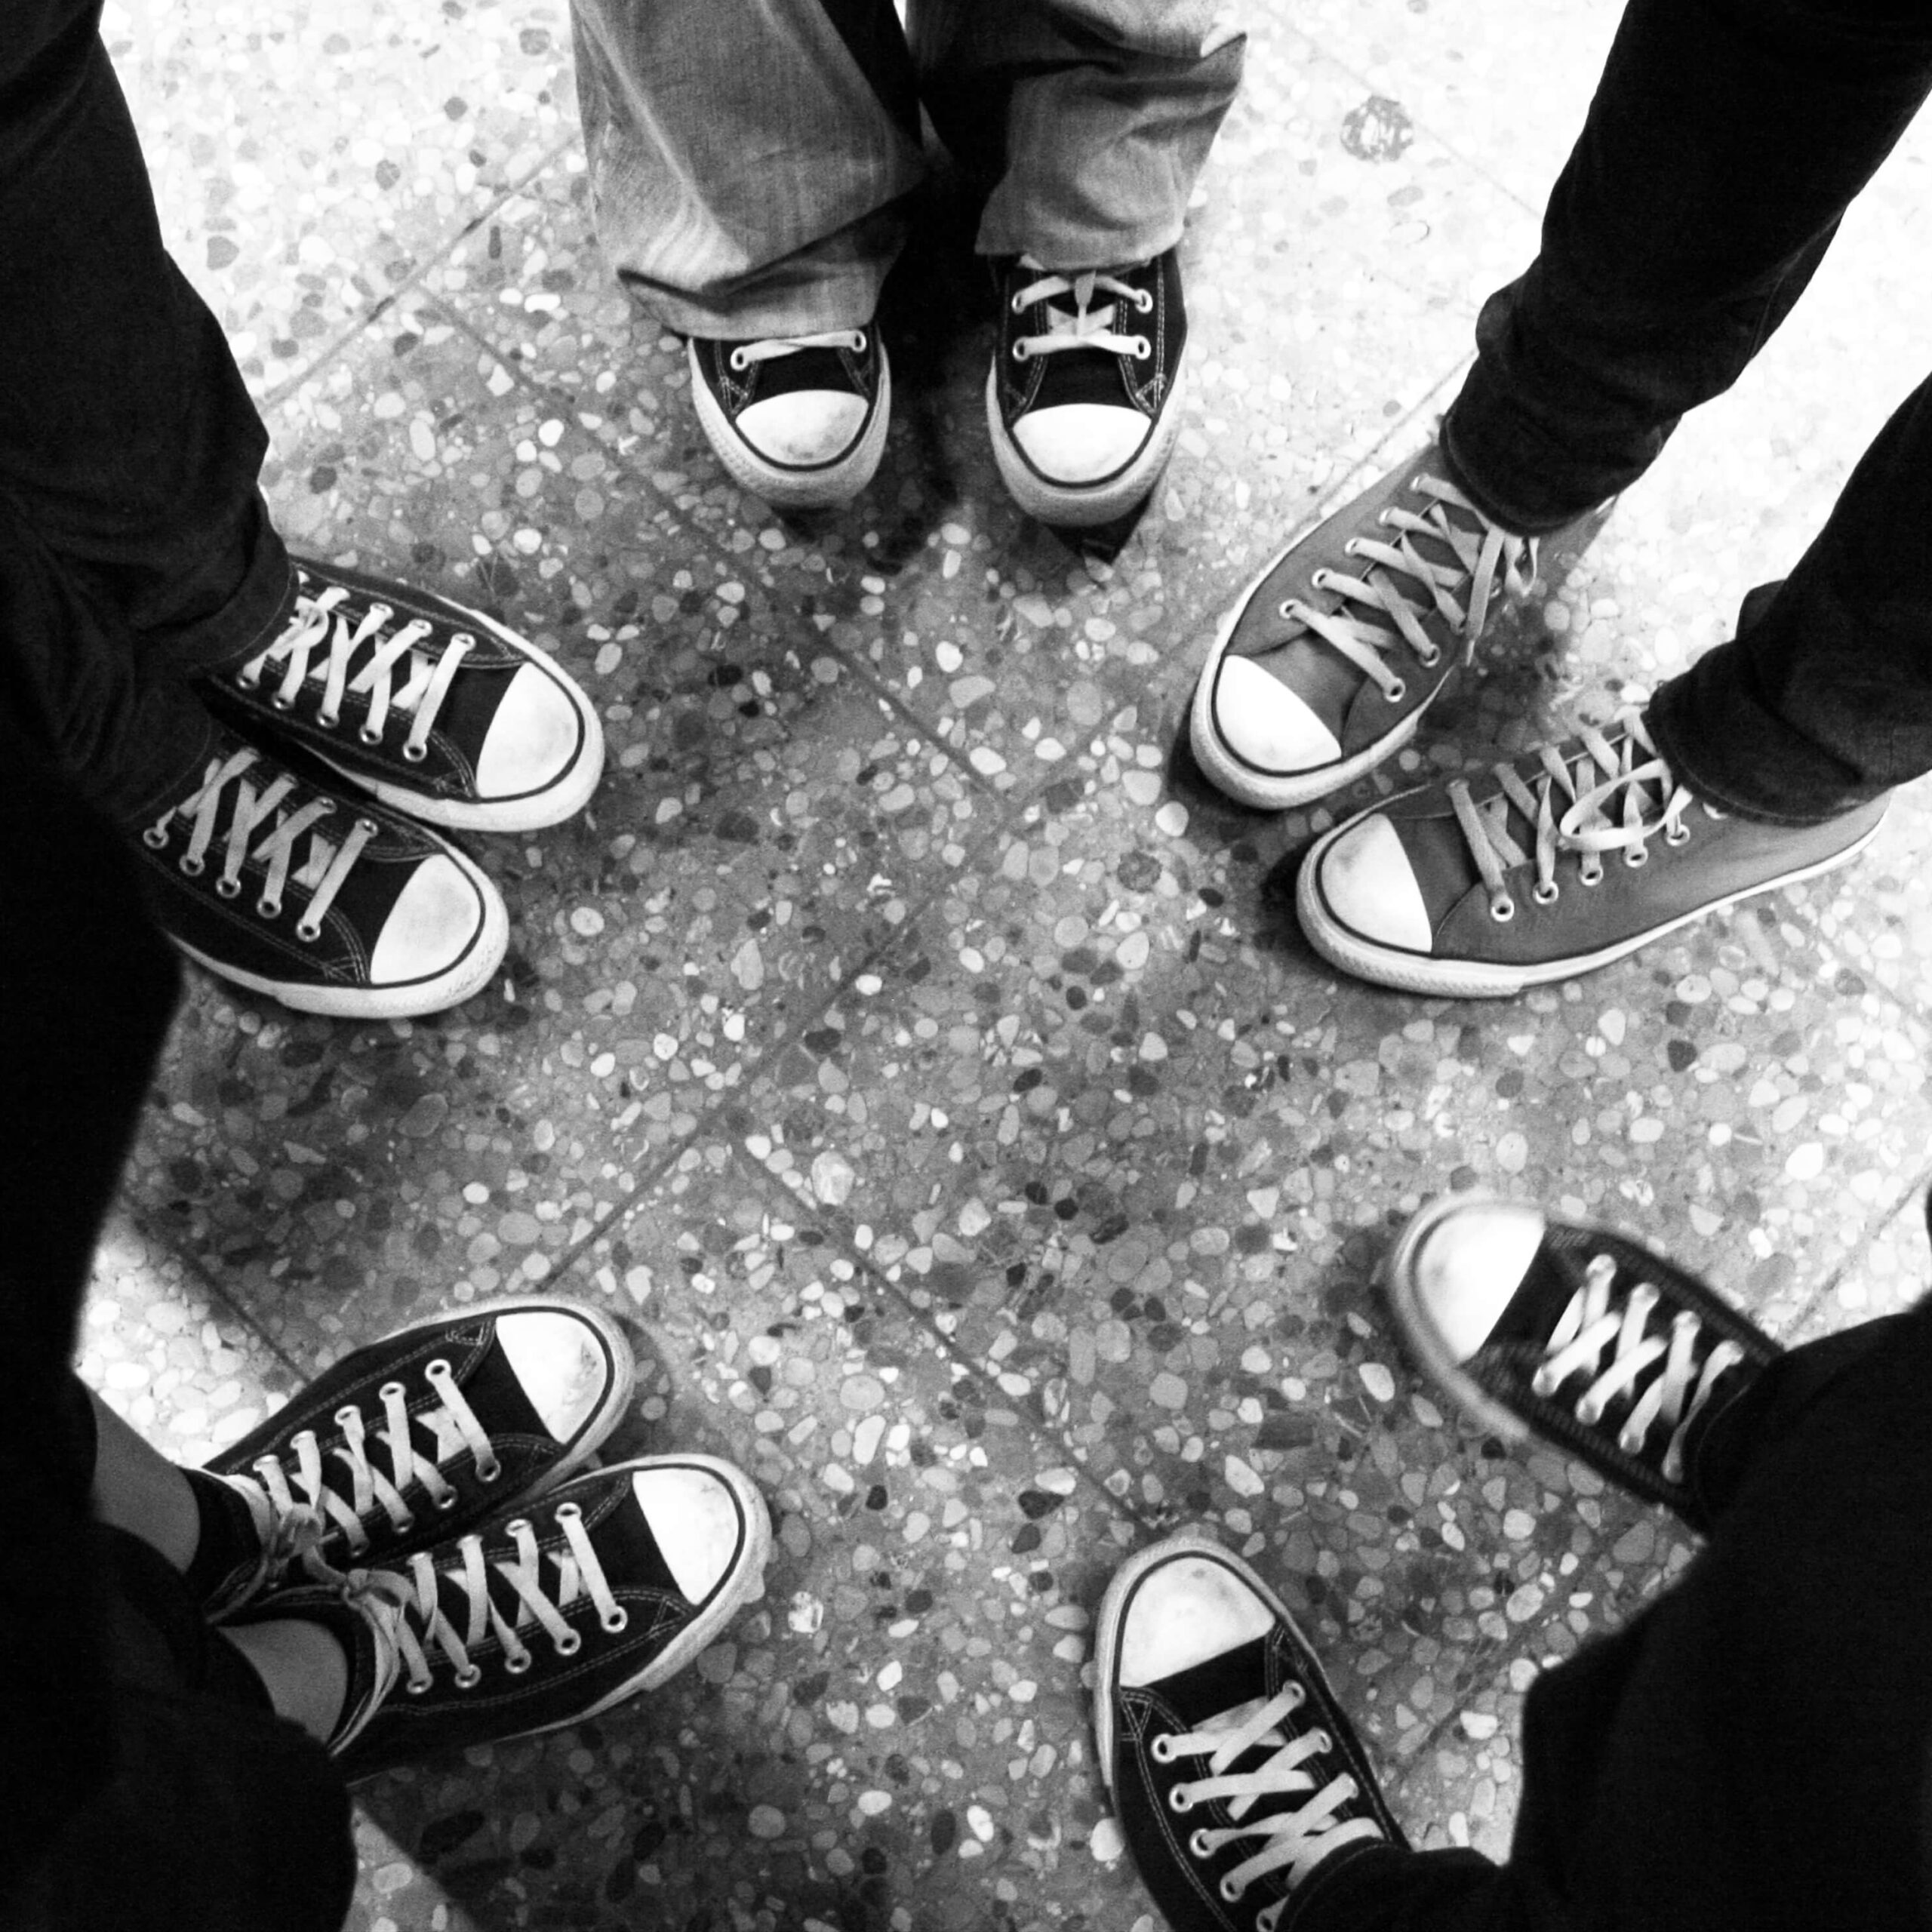 Schuhe von einer Personengruppe, die in einem Kreis stehen